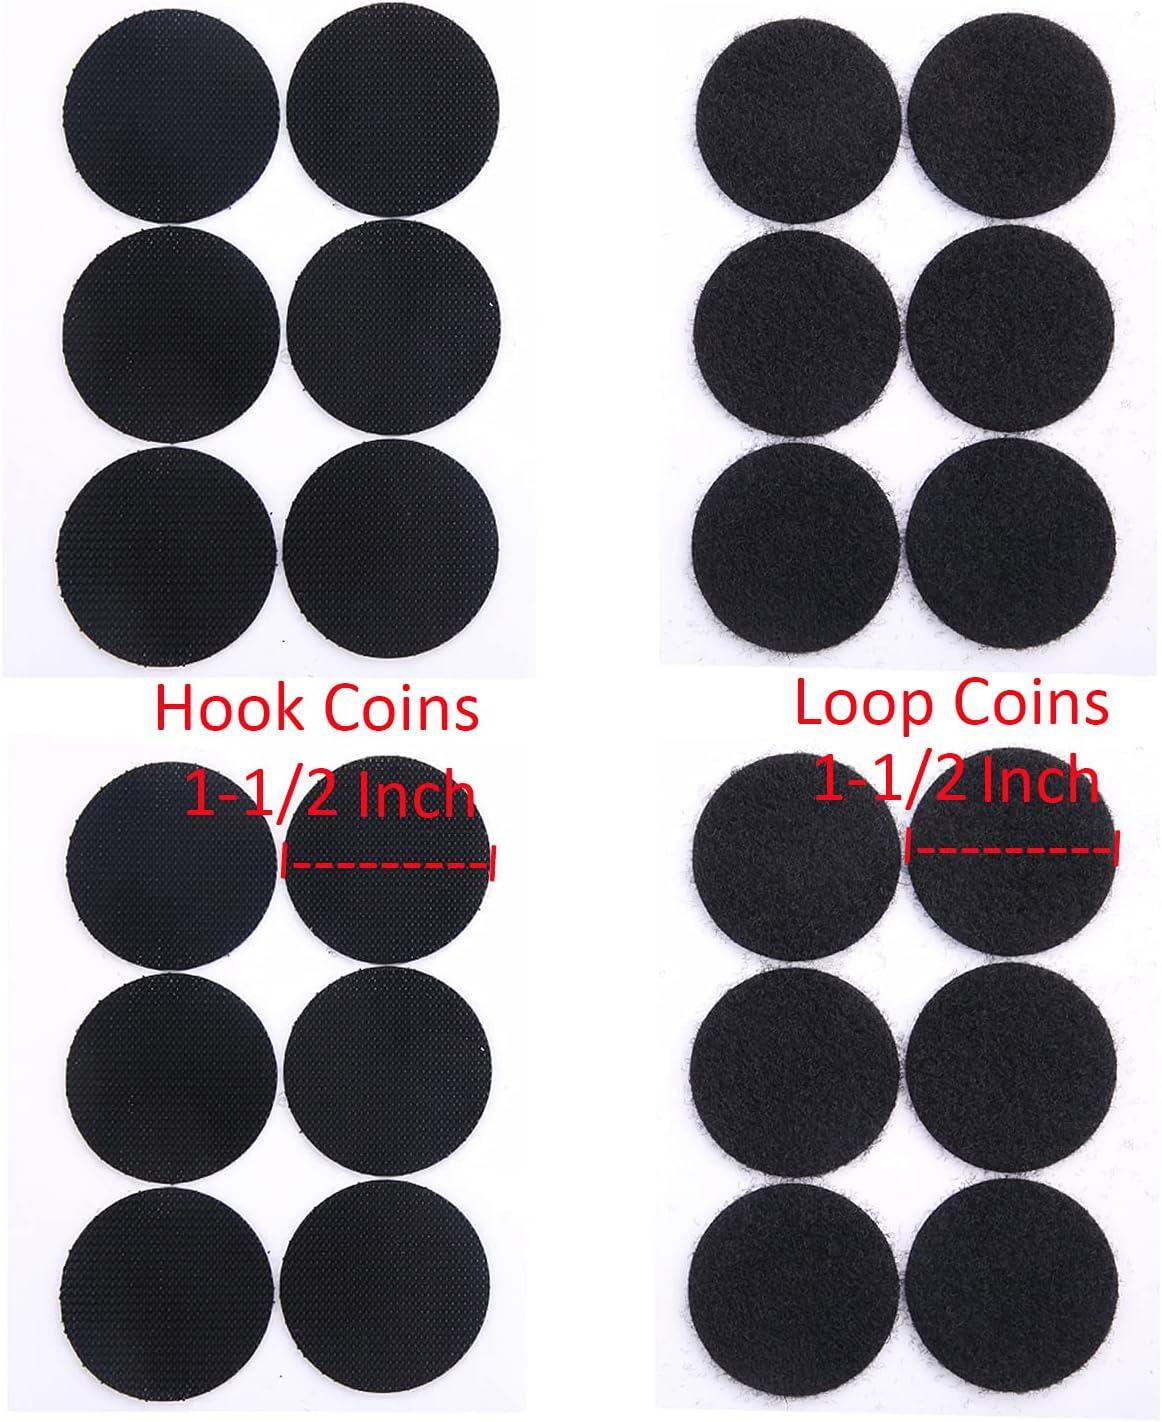 Buy Self-Adhesive Hook + Loop Dots, Sticky Back Hook Loop Fastener